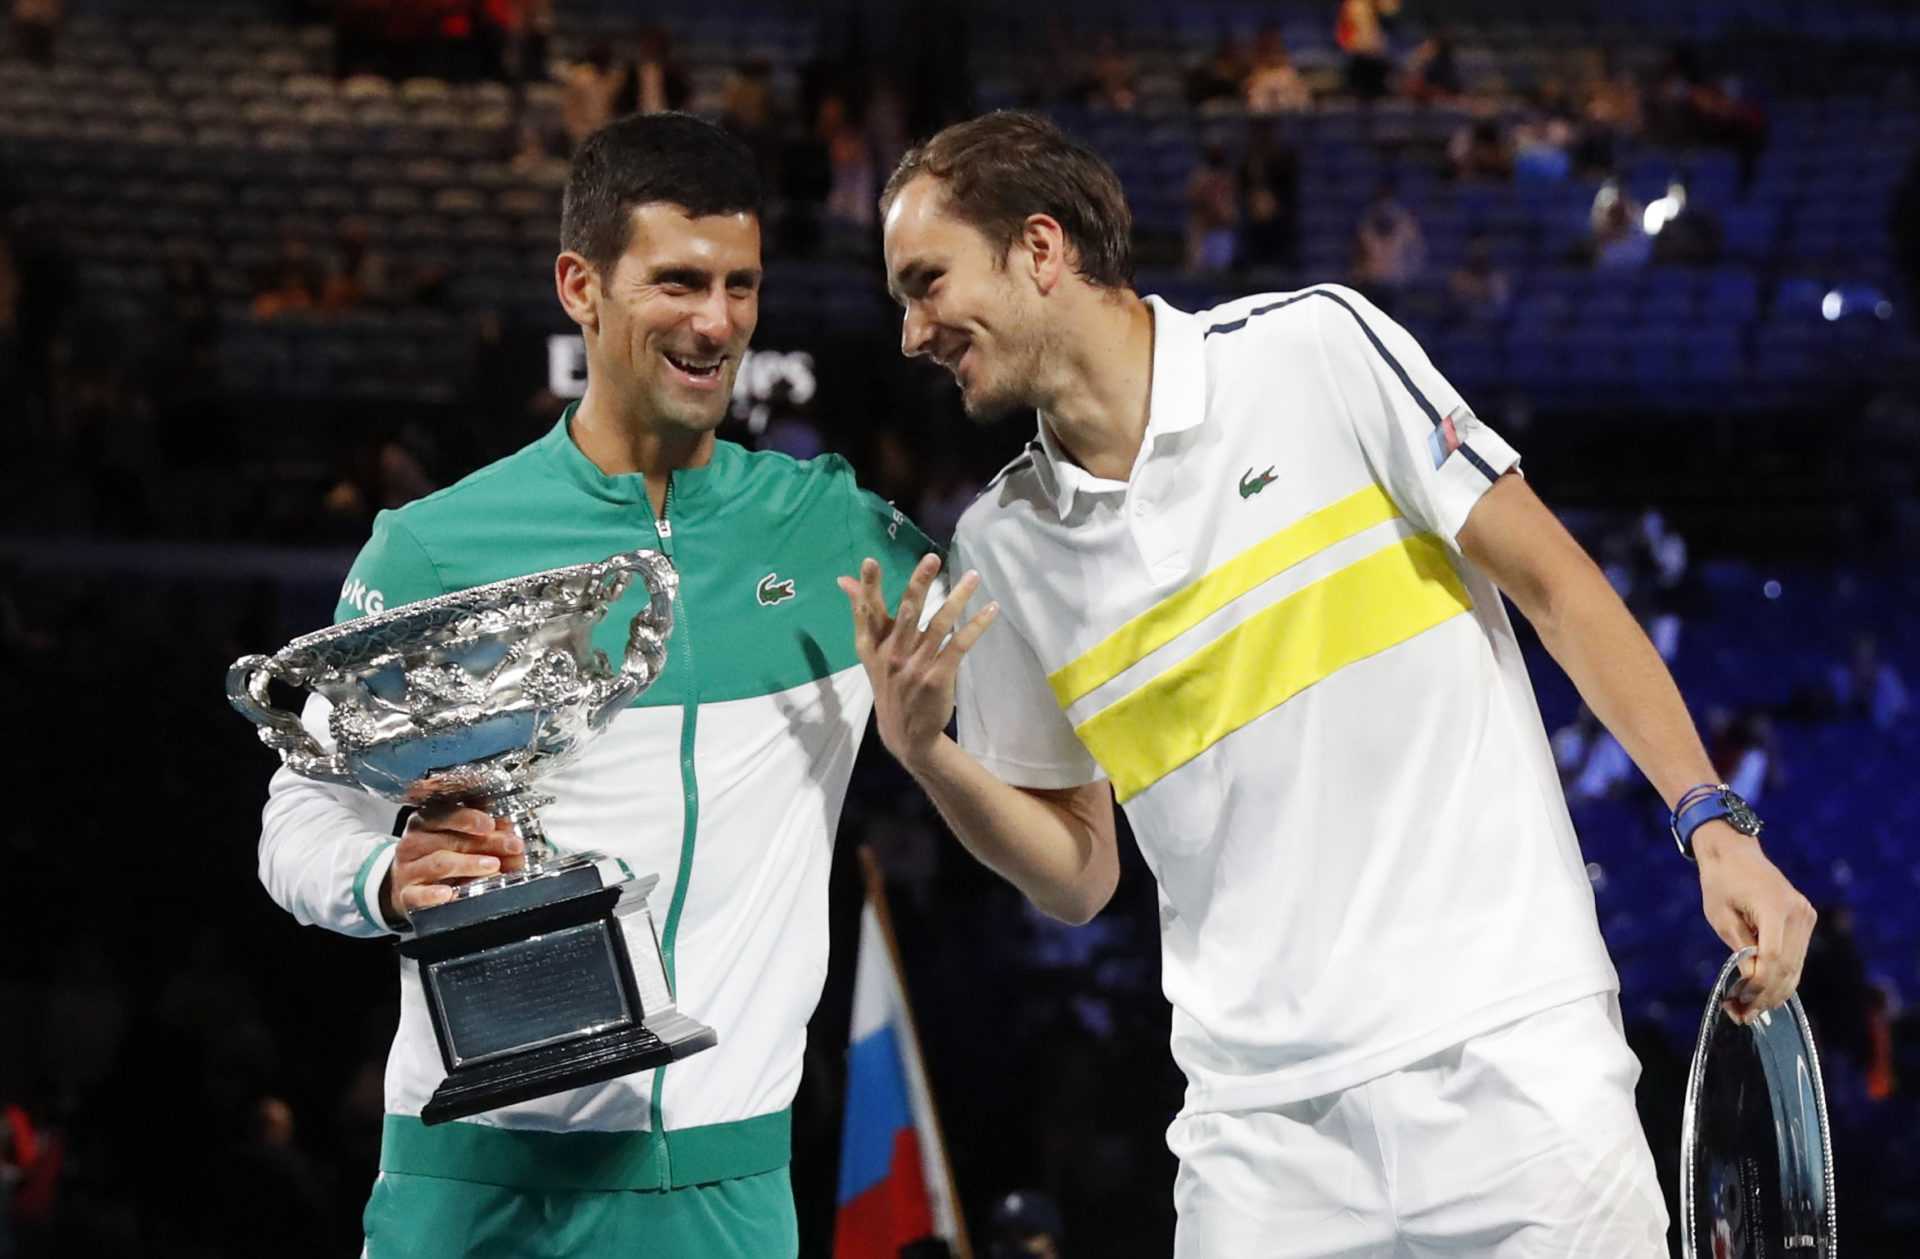 L'entraîneur de Daniil Medvedev révèle ce qui n'a pas fonctionné contre Novak Djokovic lors de la finale de l'Open d'Australie 2021